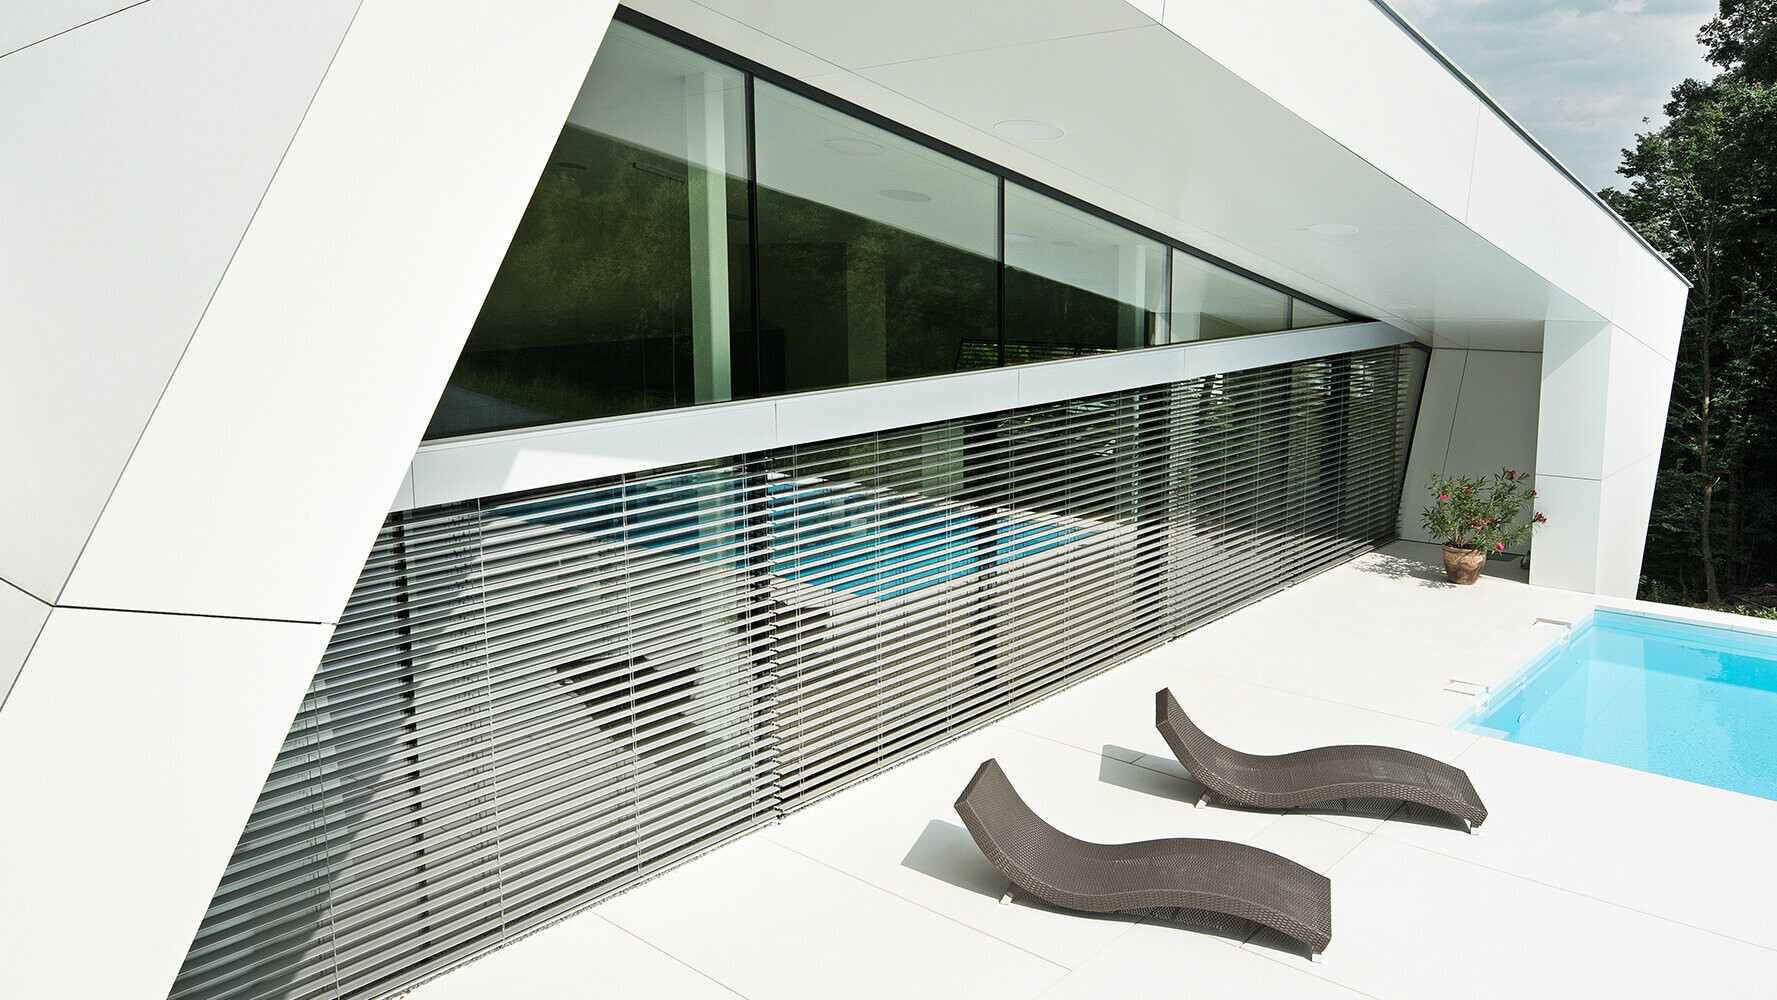 Casa unifamiliare moderna con piscina. La facciata dell’edificio è stata rivestita con pannelli compositi nel colore bianco puro.